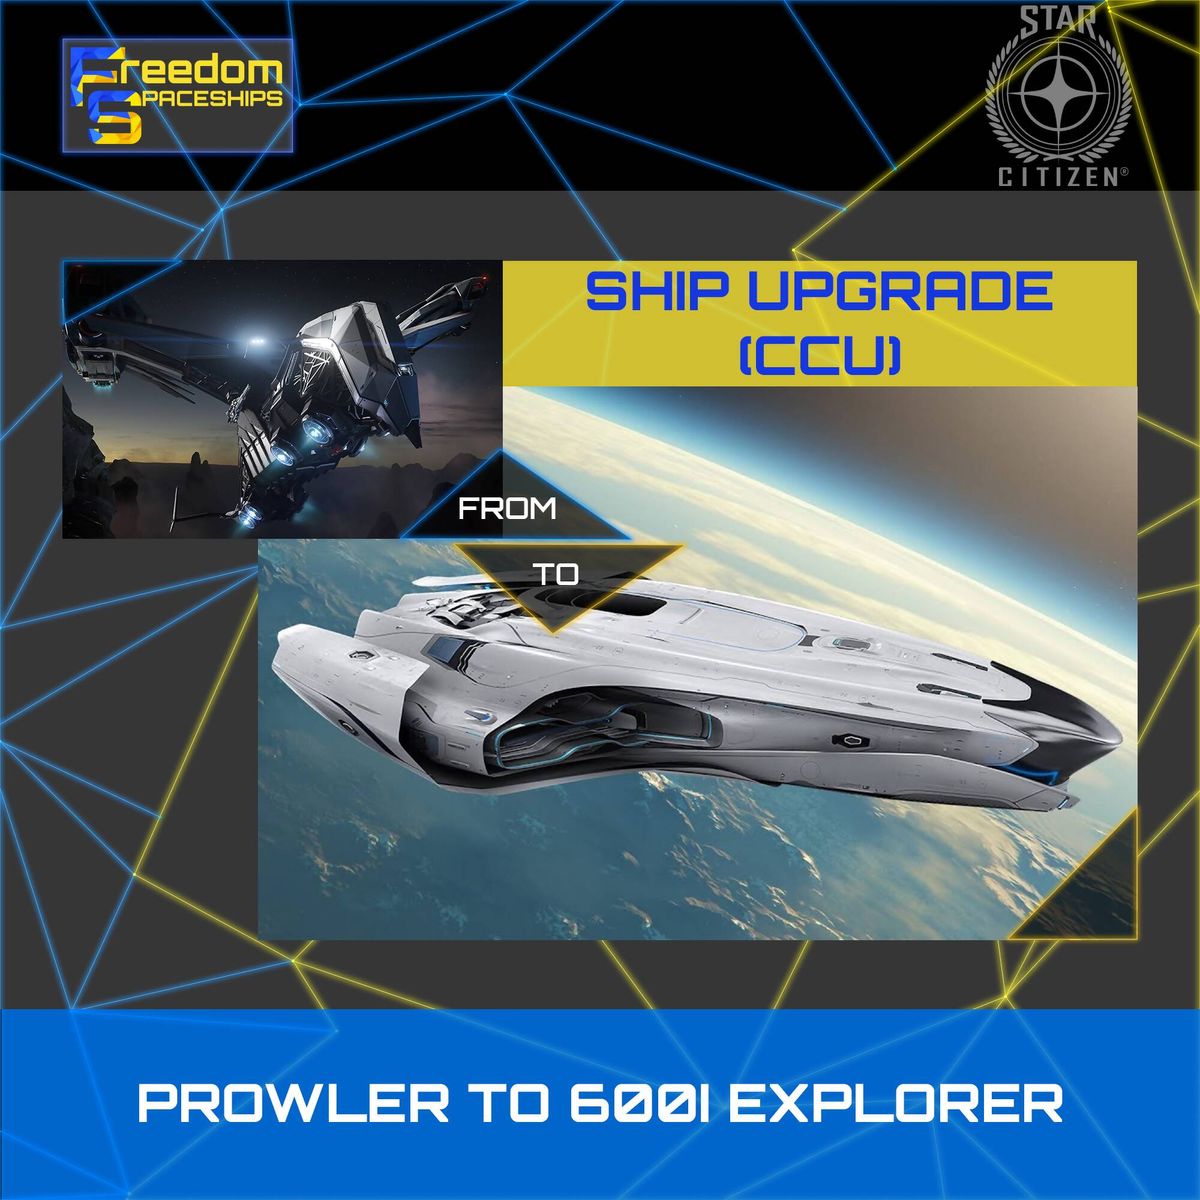 Upgrade - Prowler to 600i Explorer